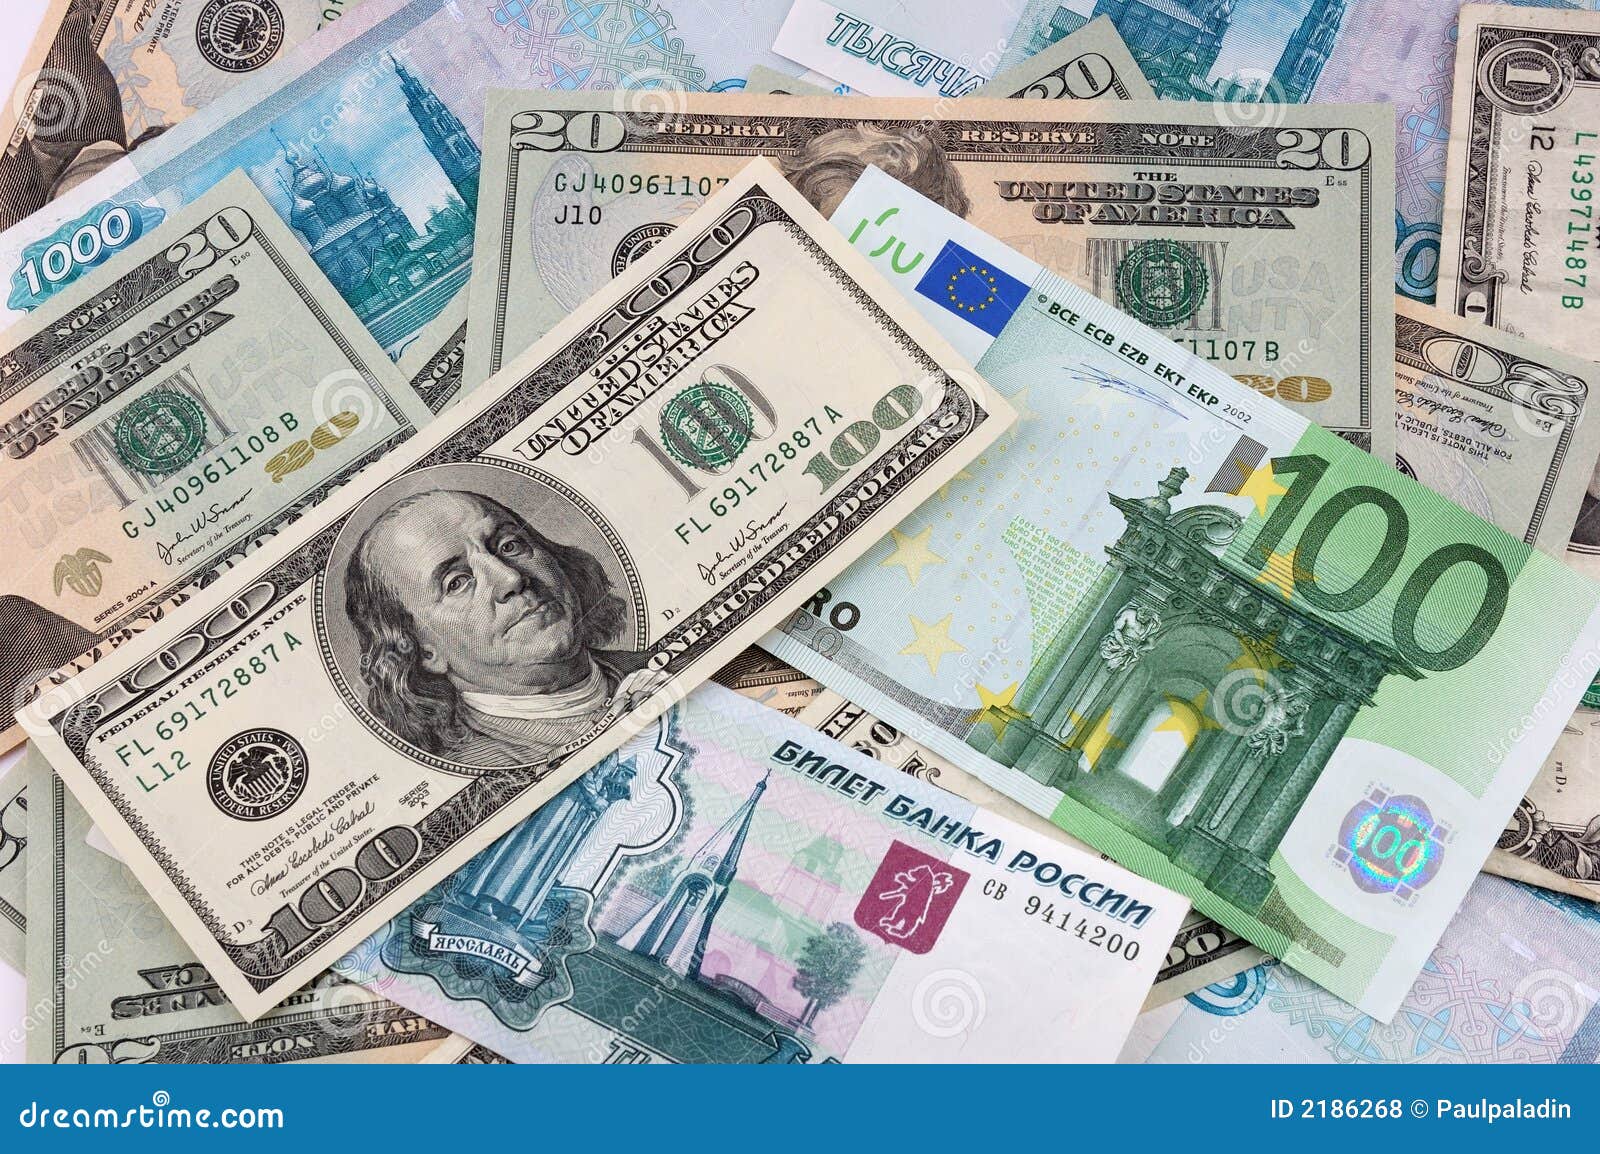 Евро доллары песня. Доллар и евро. Доллар и евро рисунок. Купюры евро и доллара. Купюры евро доллары рубли.